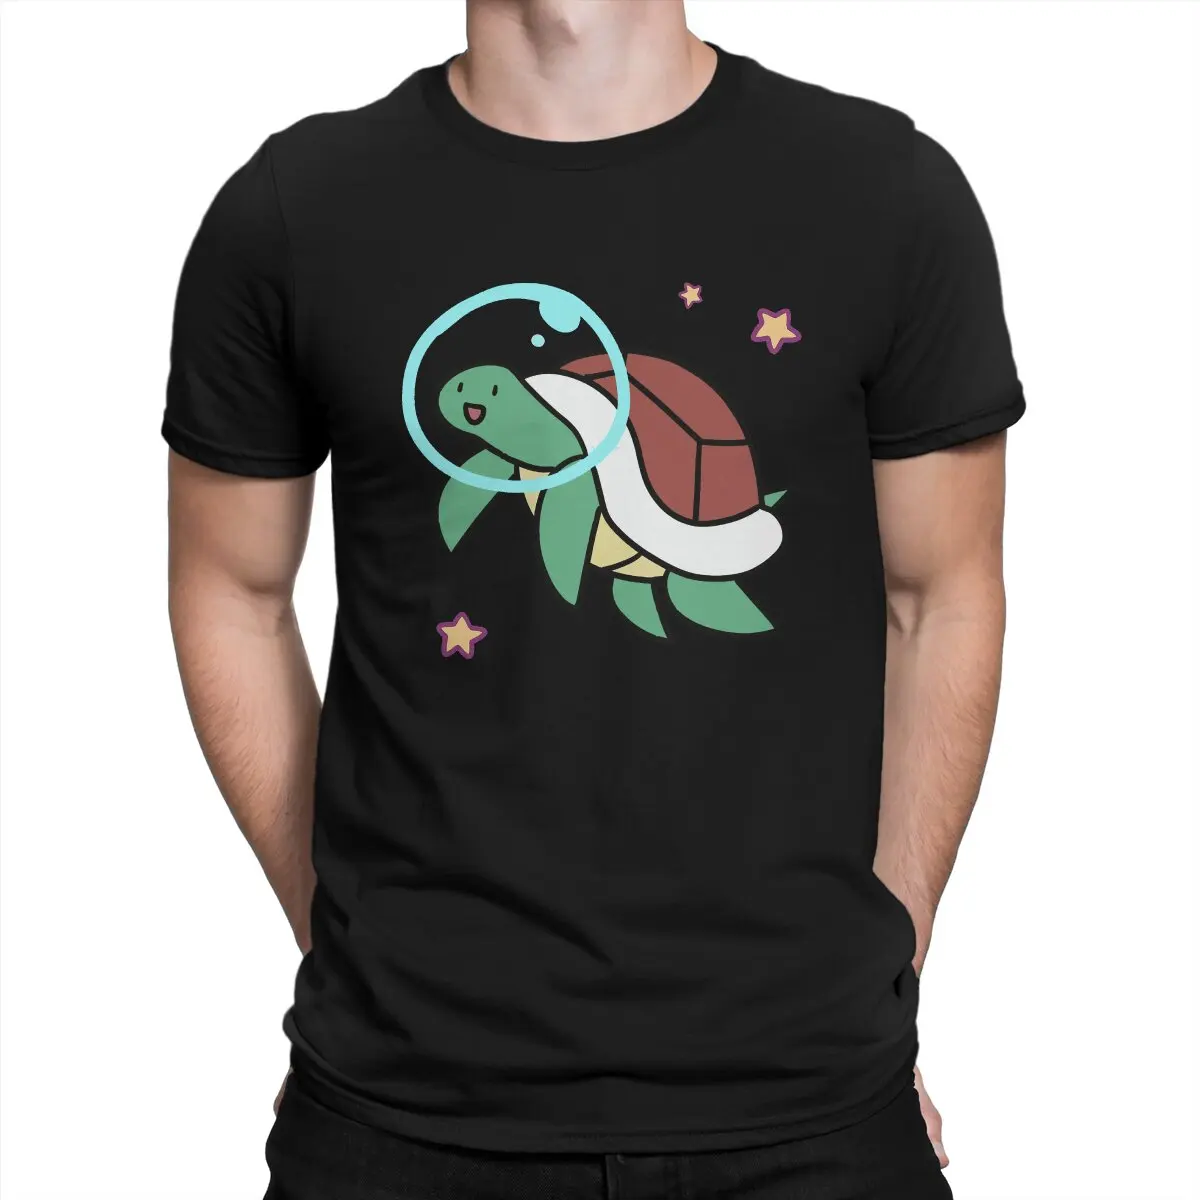 Мужские футболки Space Turtle, Забавные футболки Magical Turtle, футболки с коротким рукавом и круглым вырезом, Хлопковая одежда для подарков